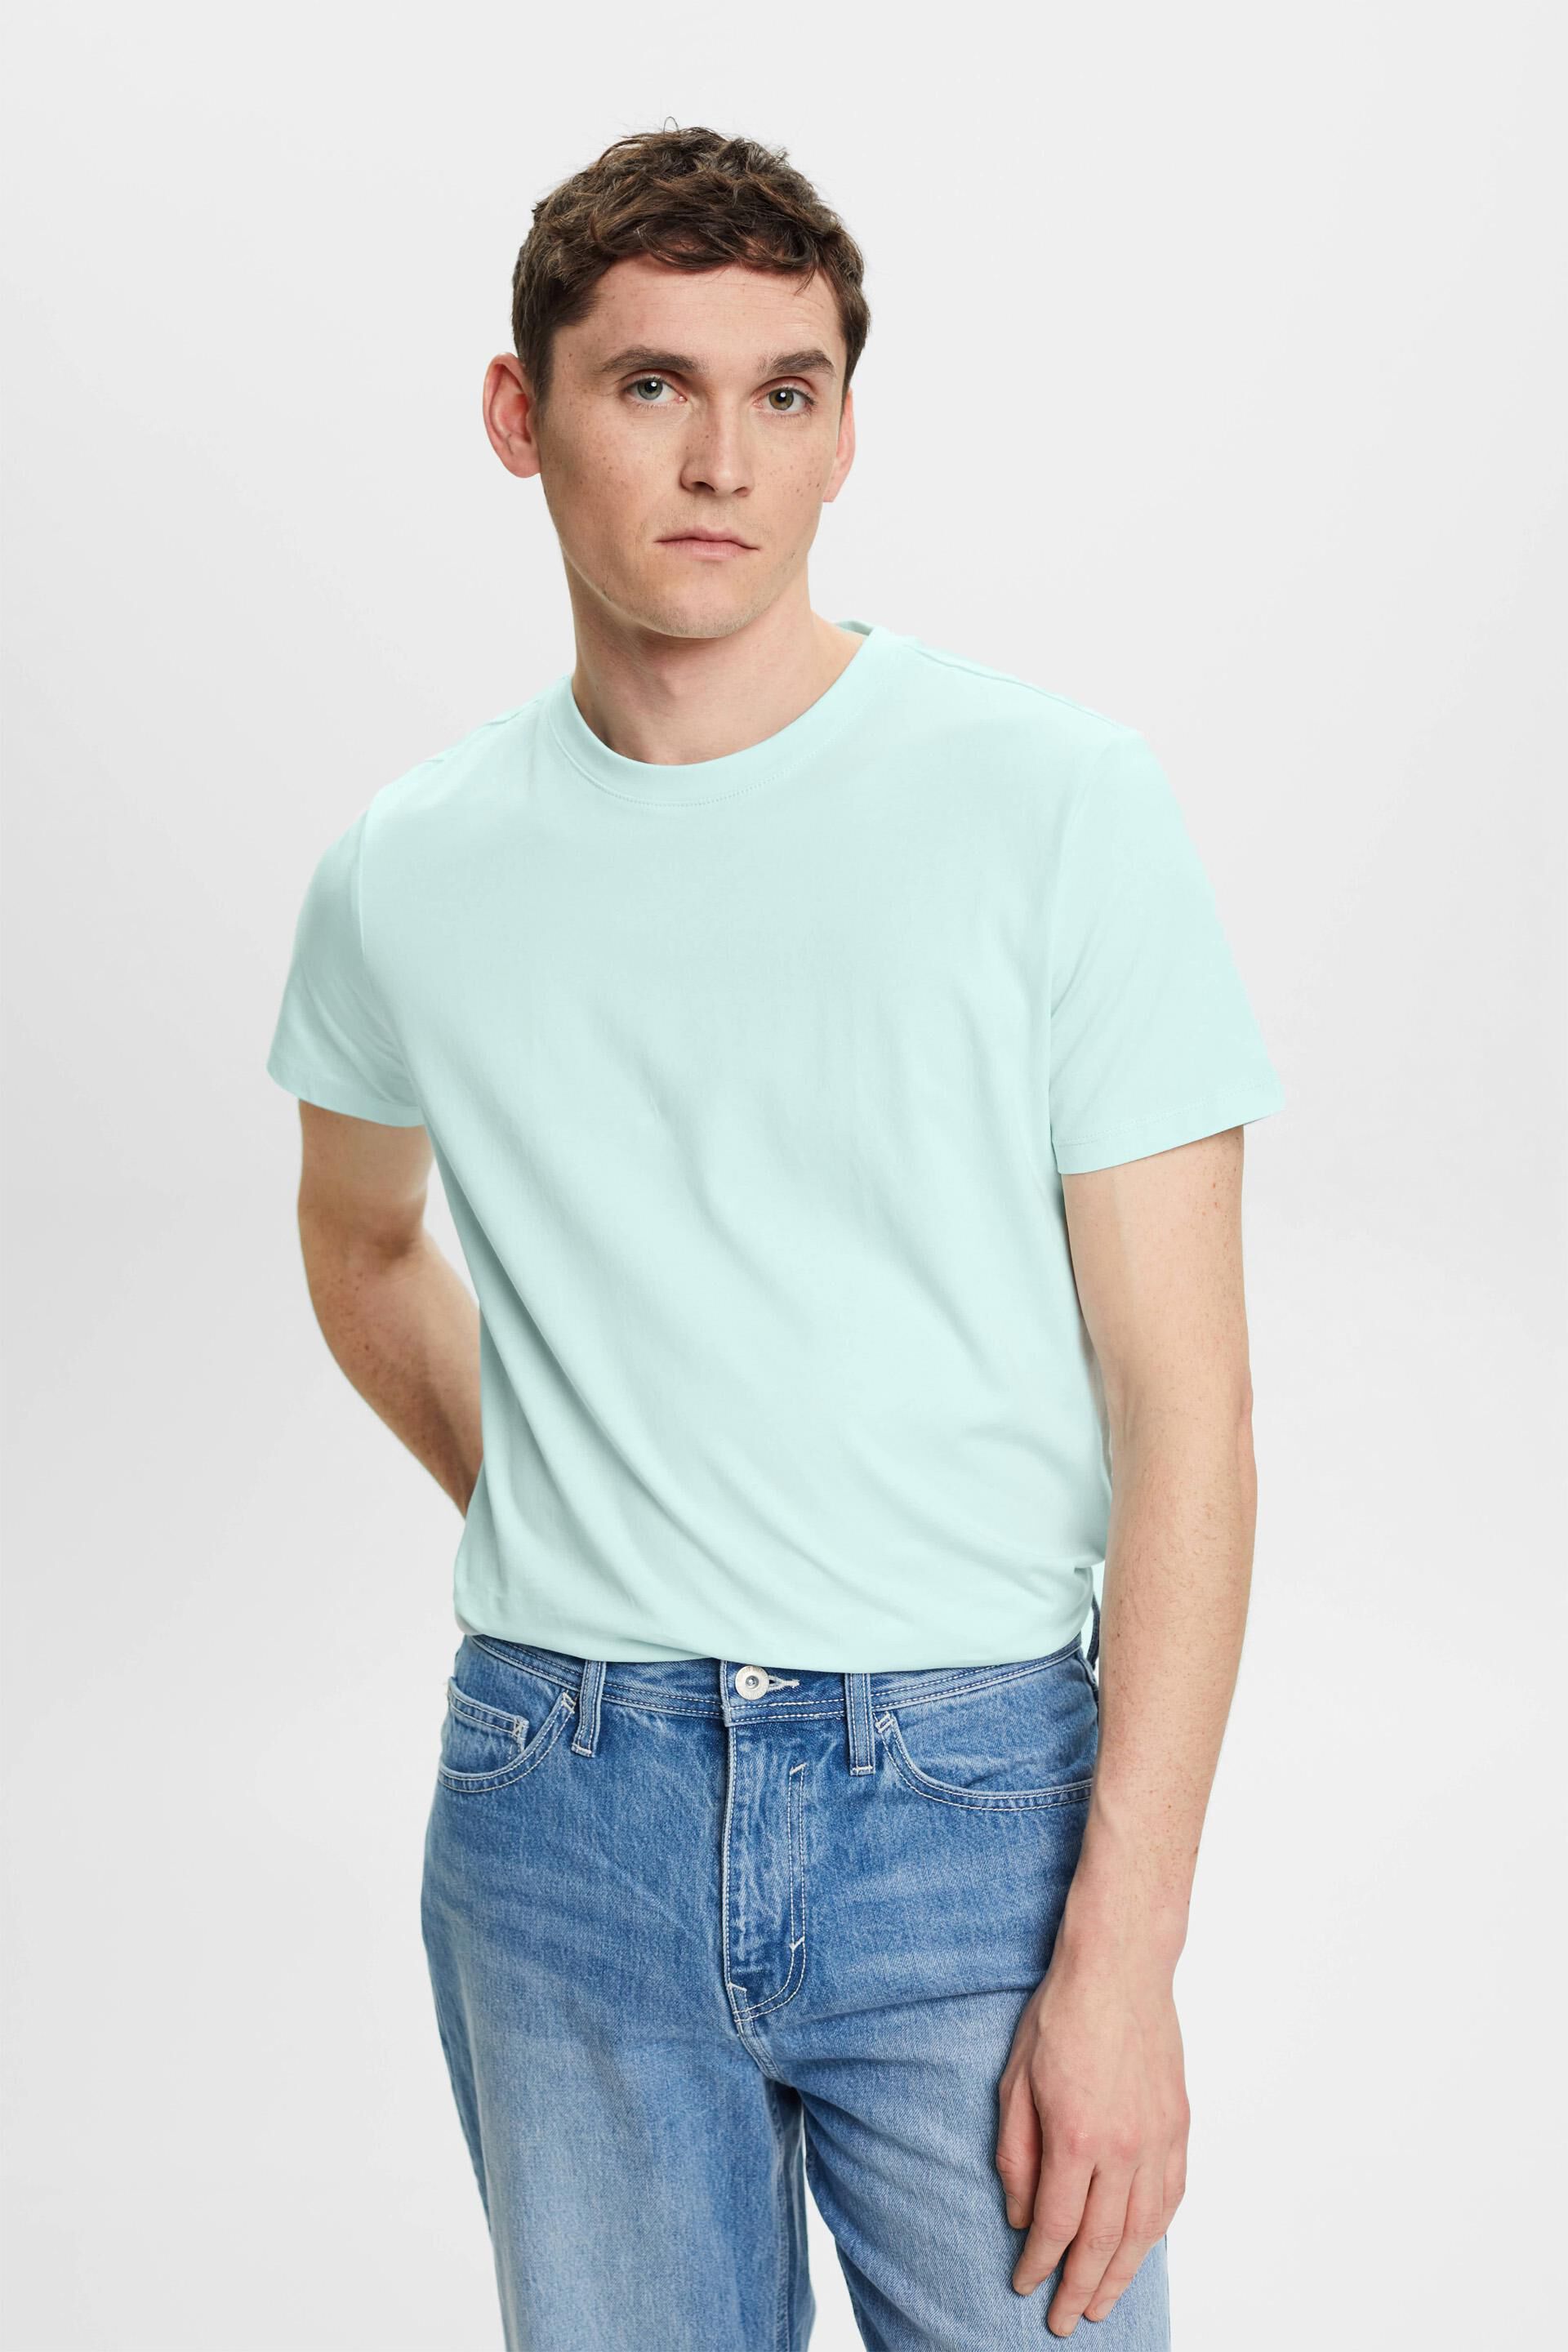 Esprit Slim t-shirt cotton fit